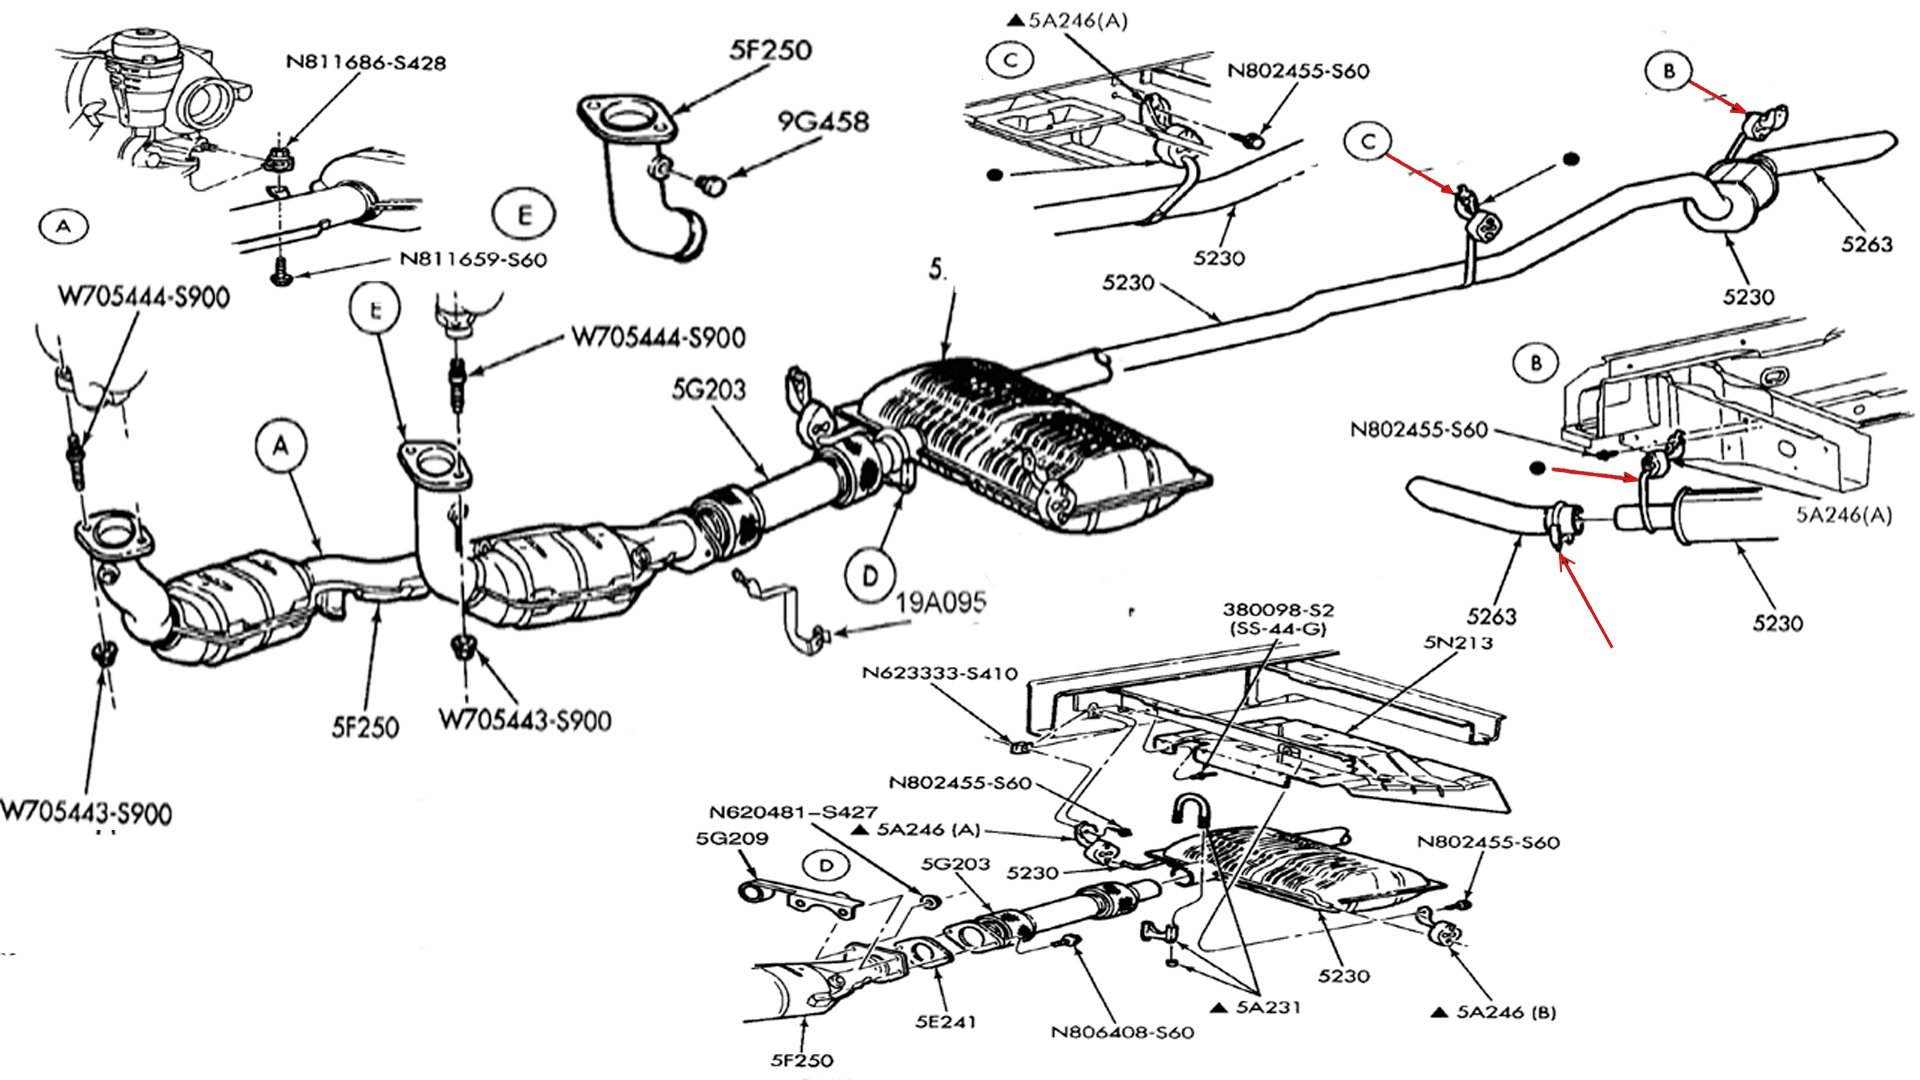 Wiring Diagram PDF: 2003 Ford Windstar Fuel Pump Wiring Diagram